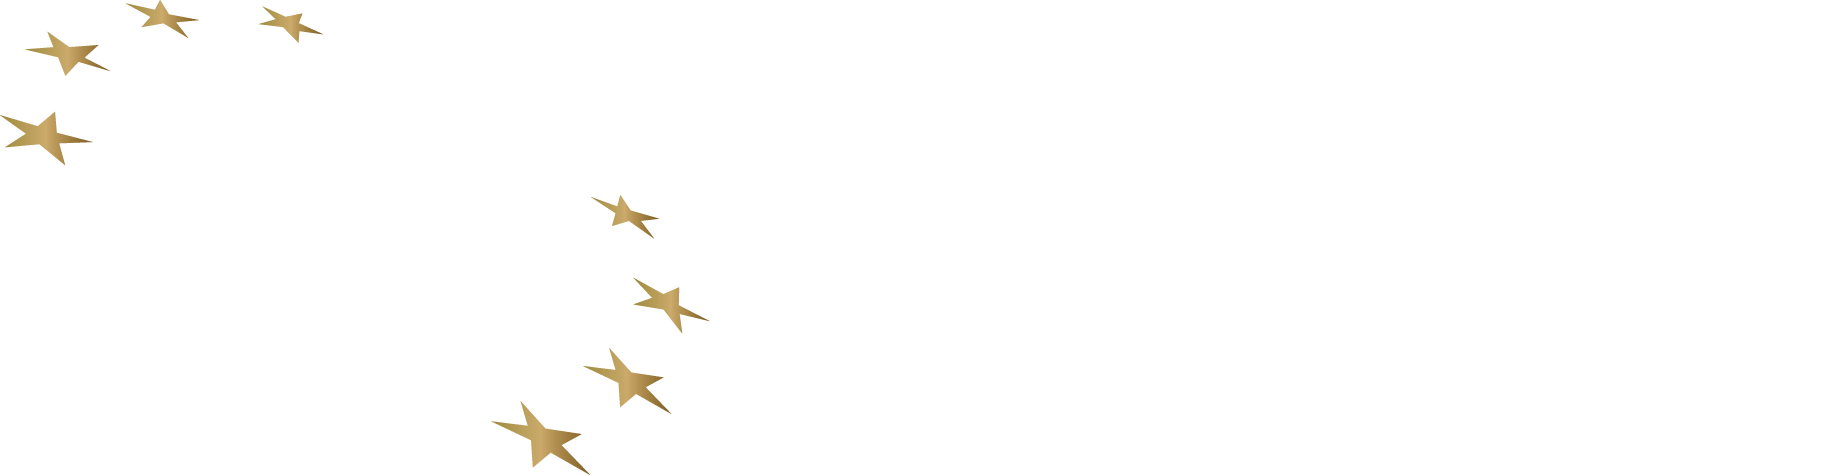 European Rugby League